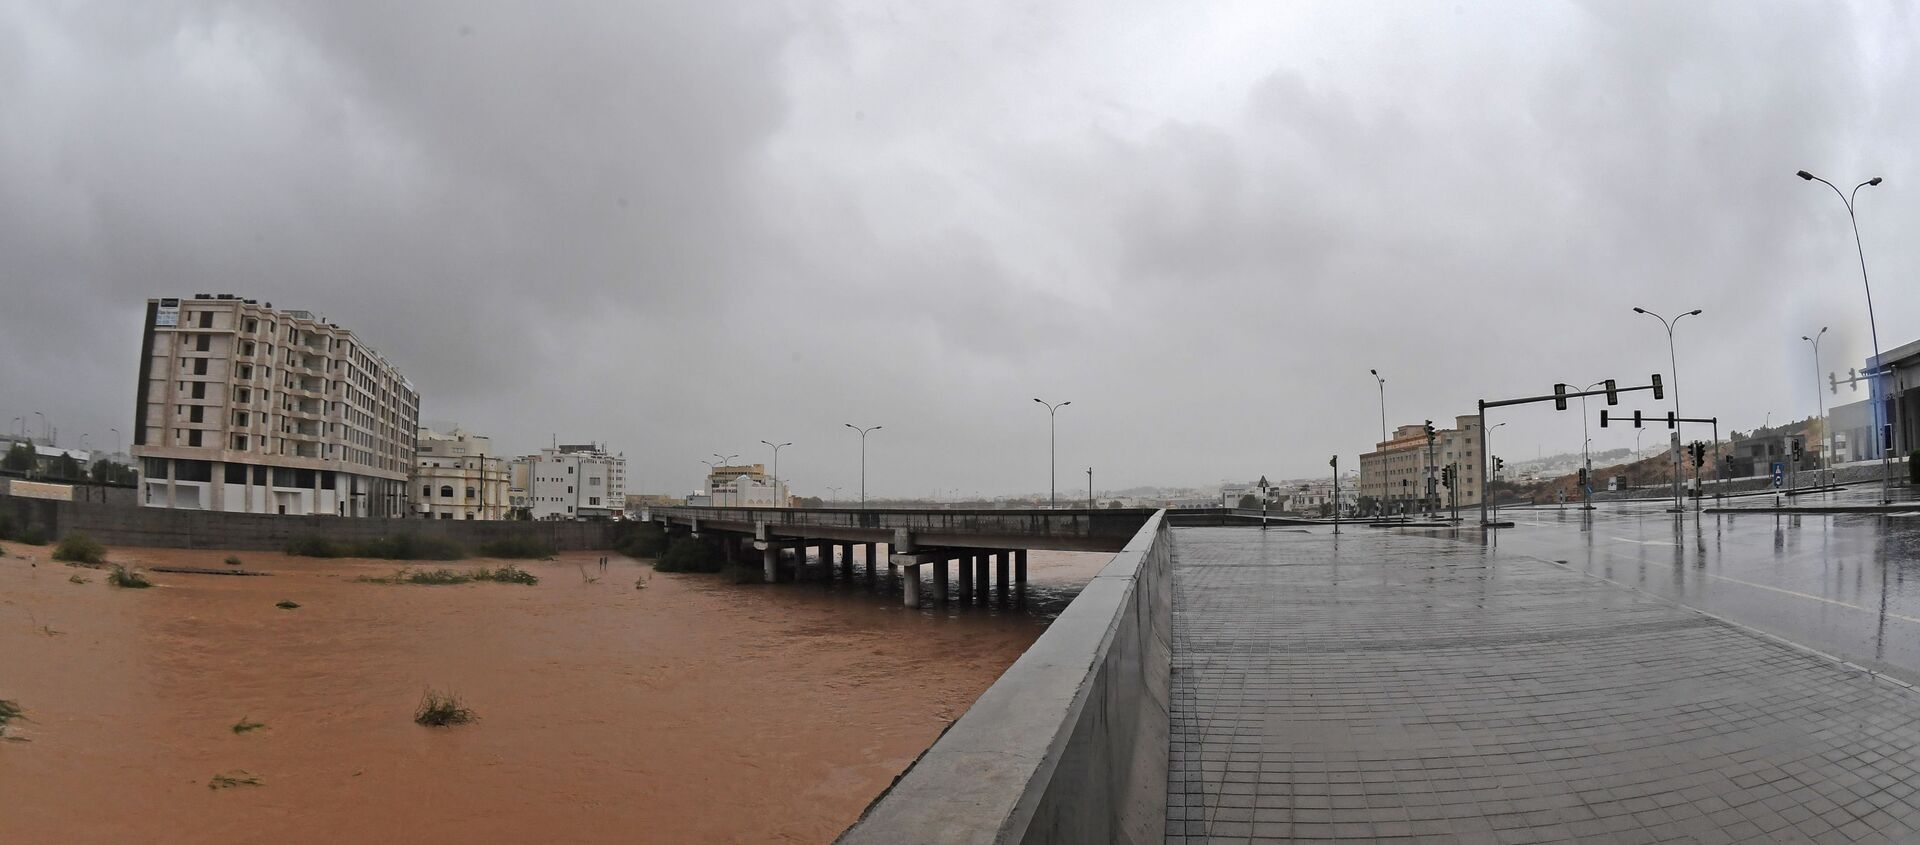 إعصار شاهين يضرب مدينة مسقط، سلطنة عمان 3 أكتوبر 2021 - سبوتنيك عربي, 1920, 09.10.2021